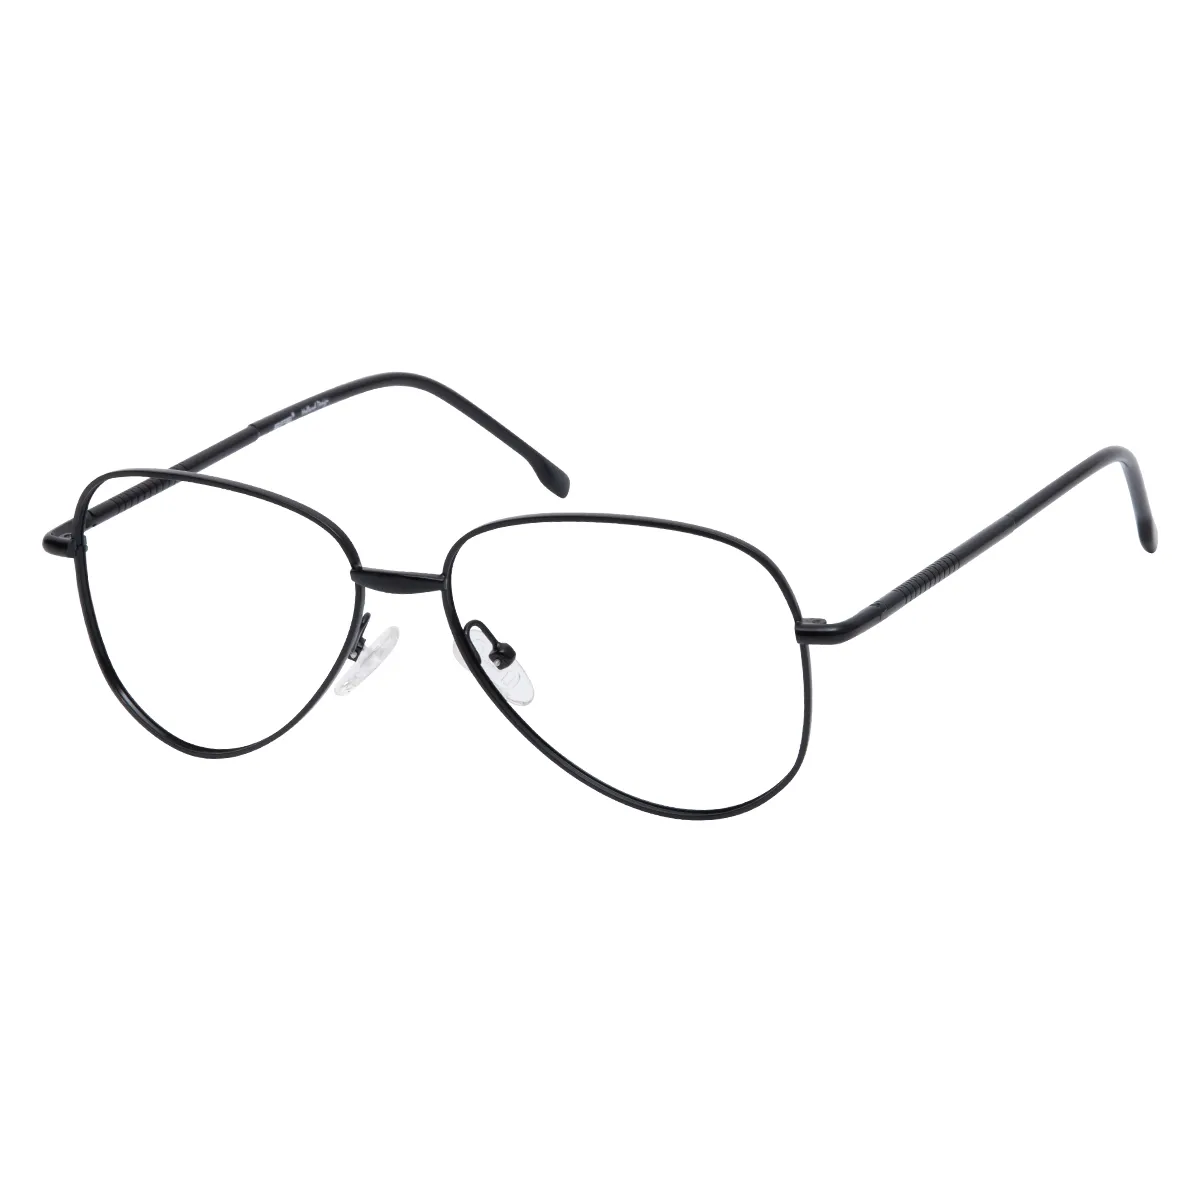 Timothy - Geometric Black Glasses for Men & Women